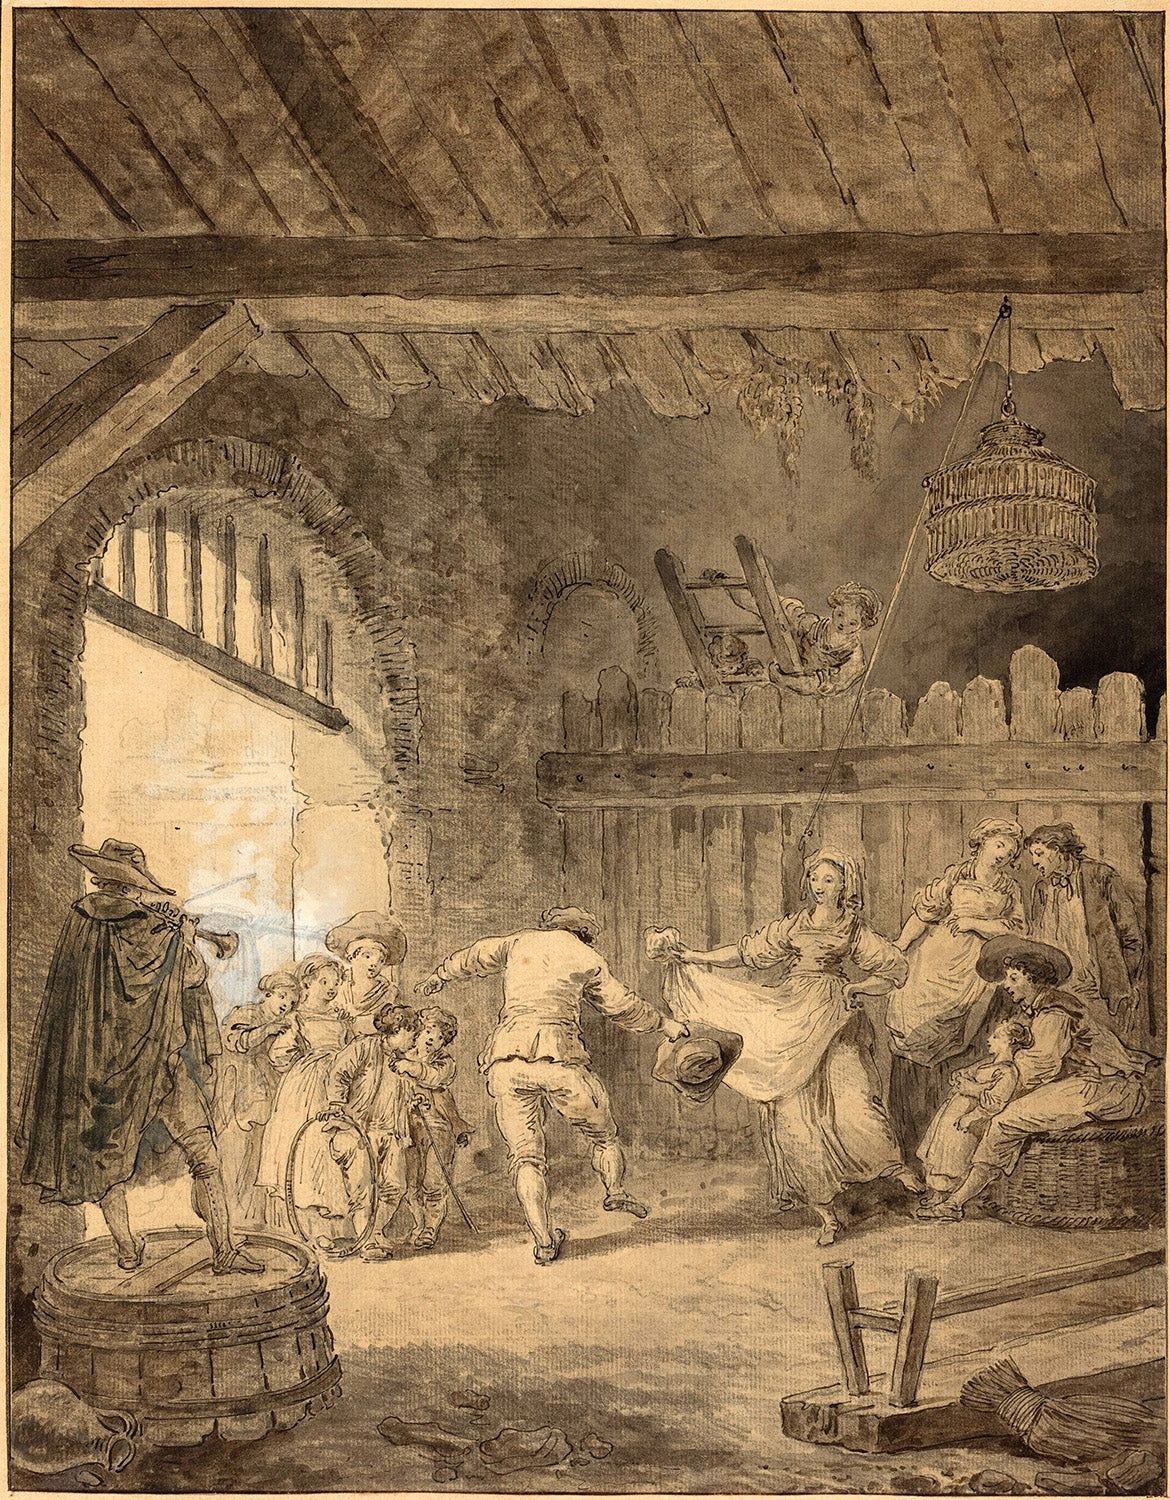 The Peasant Dance by Hubert Robert Art Print